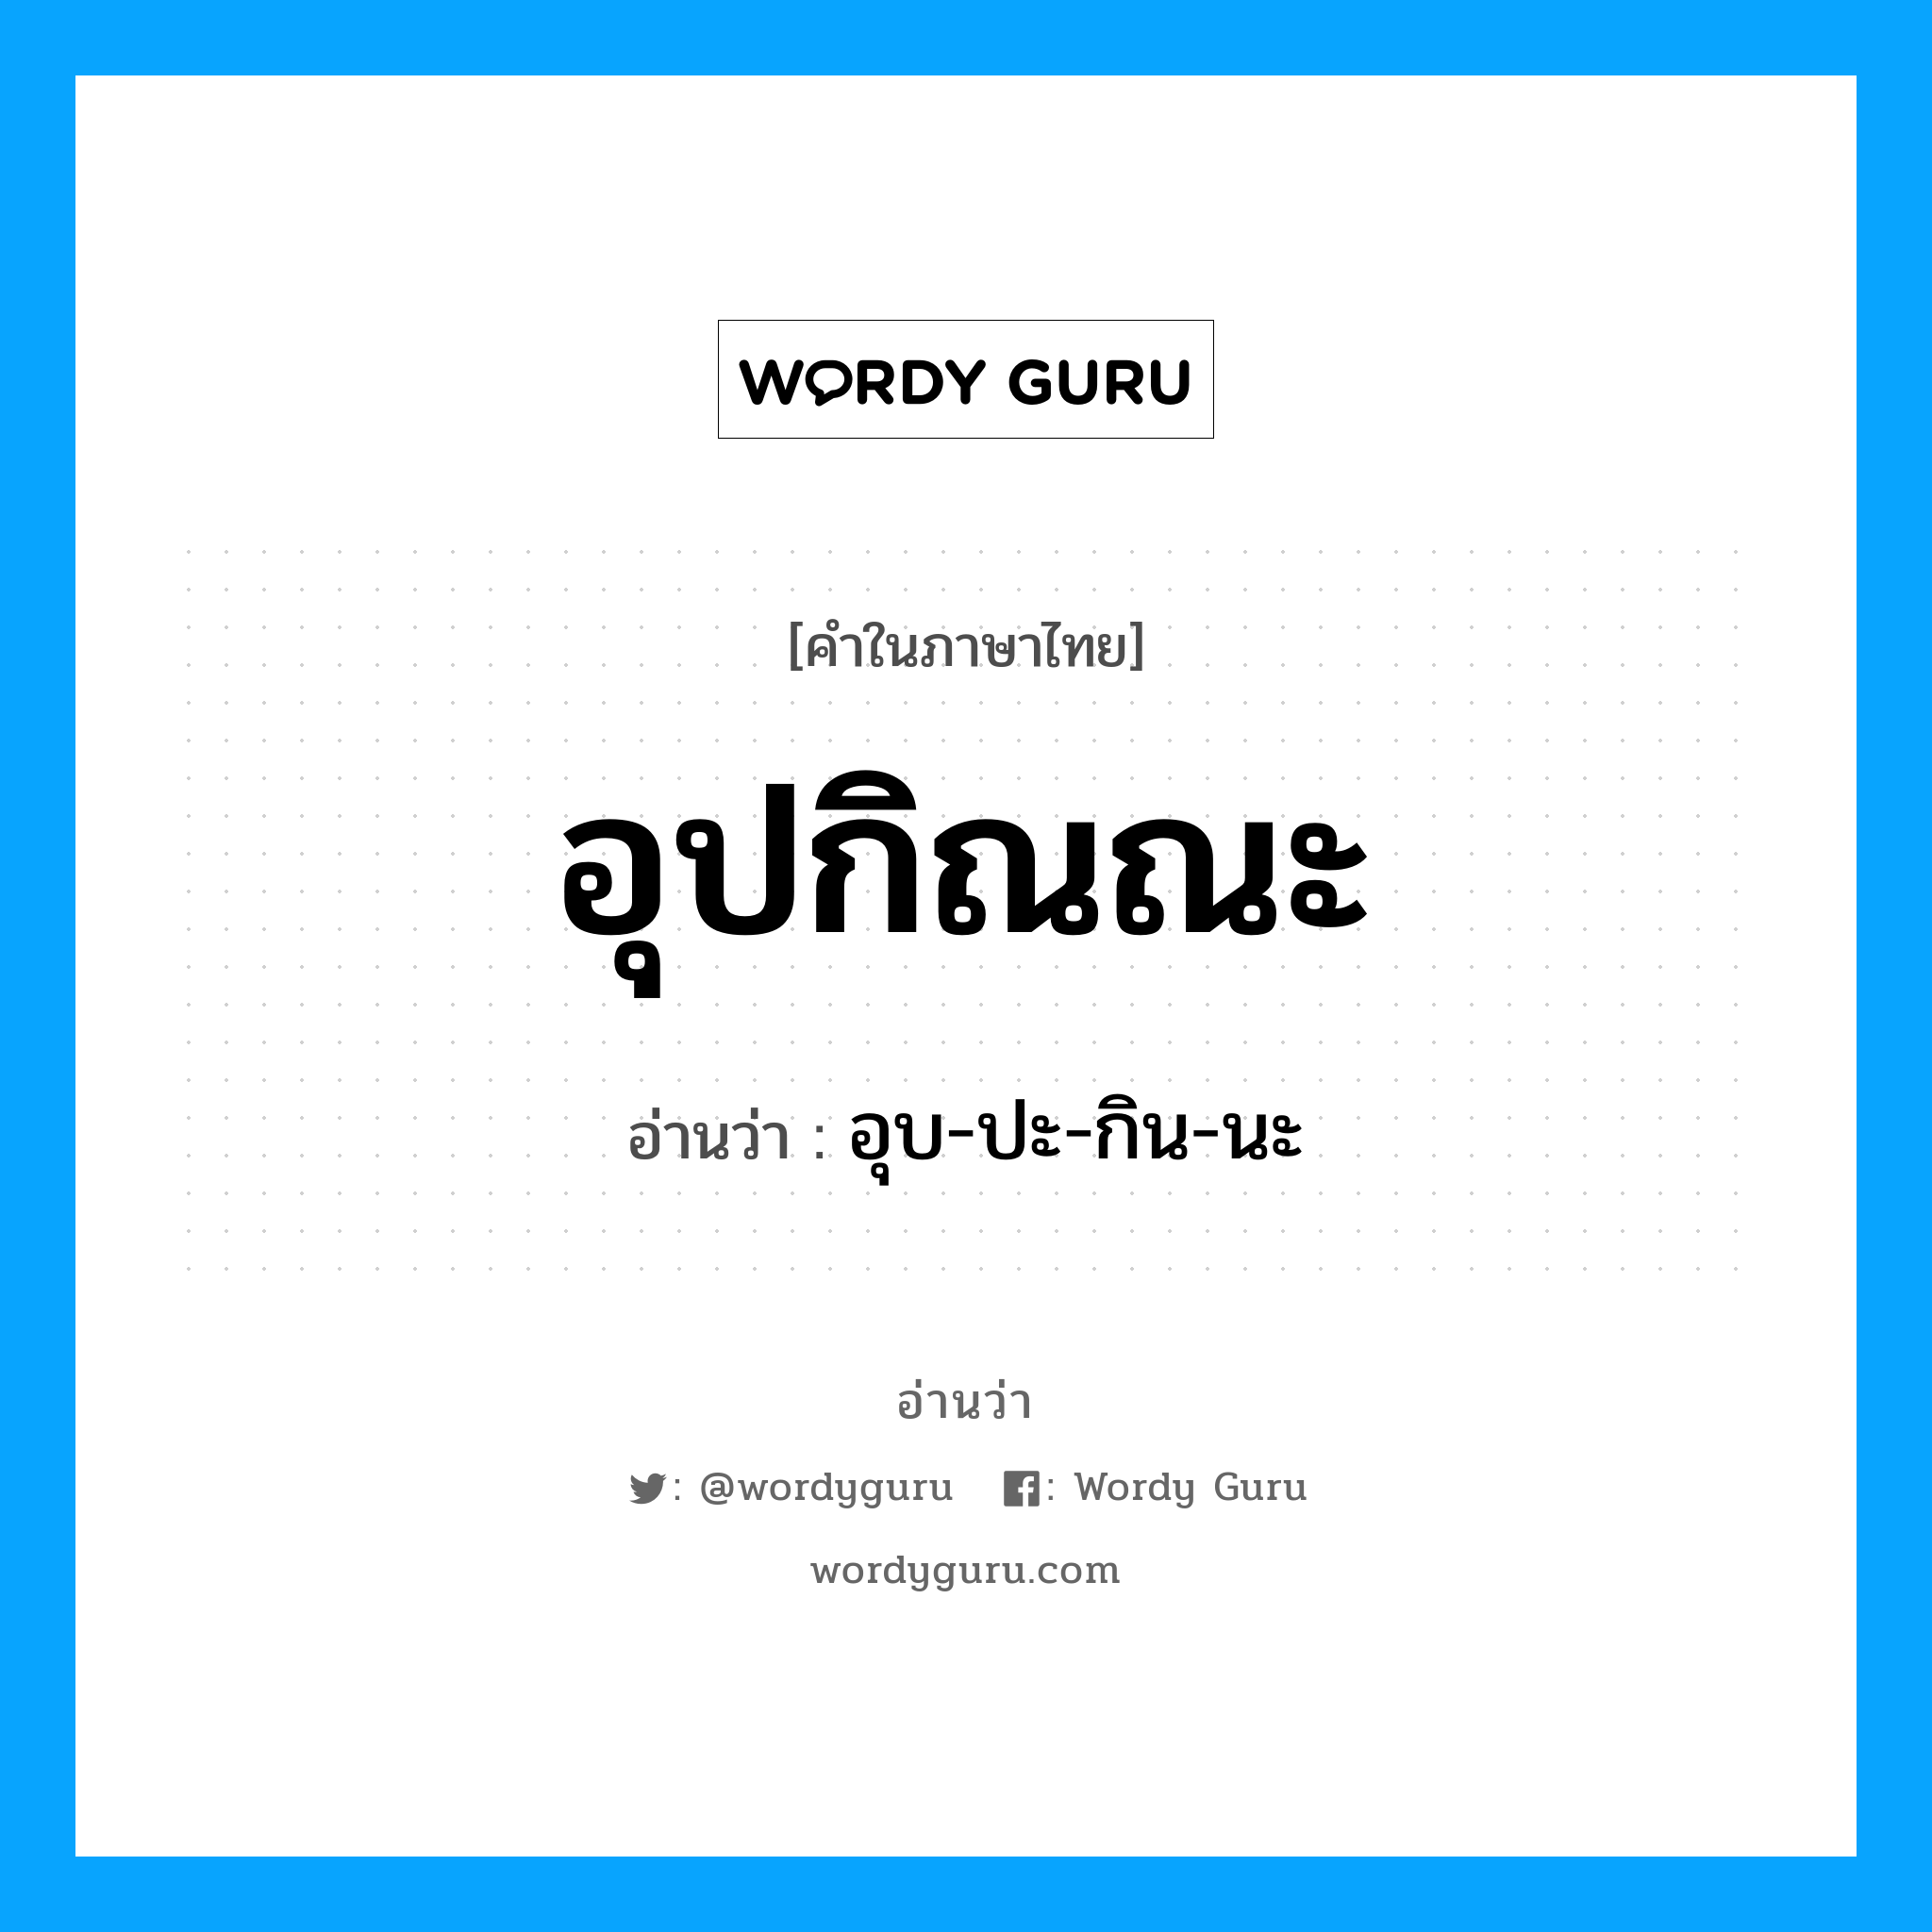 อุบ-ปะ-กิน-นะ เป็นคำอ่านของคำไหน?, คำในภาษาไทย อุบ-ปะ-กิน-นะ อ่านว่า อุปกิณณะ